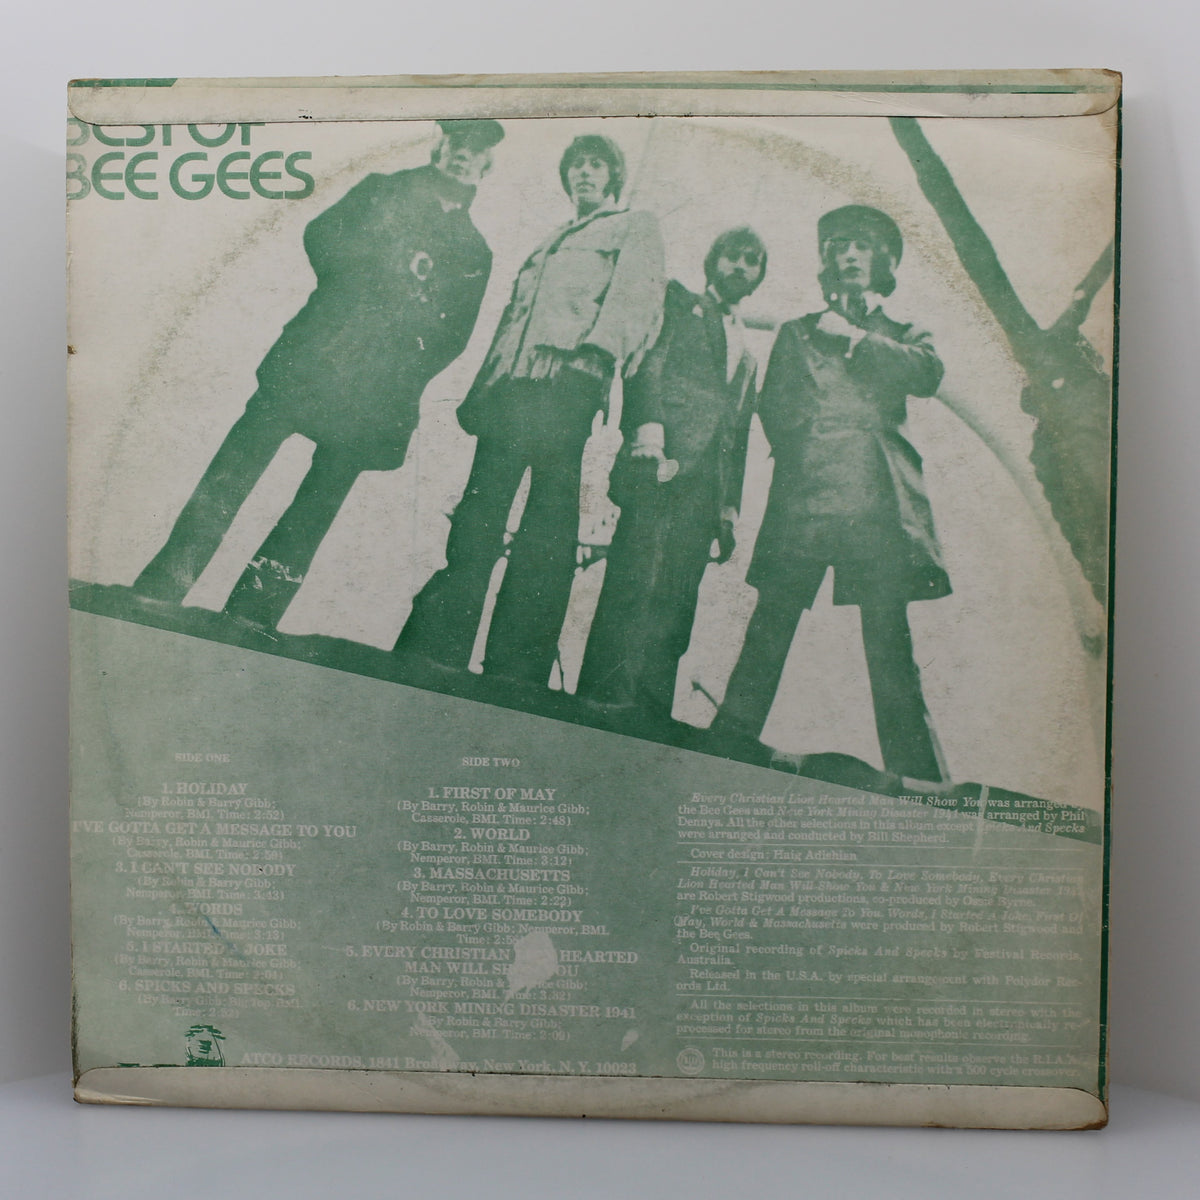 Bee Gees - Best Of, Vinyl LP 33Rpm, Taiwan